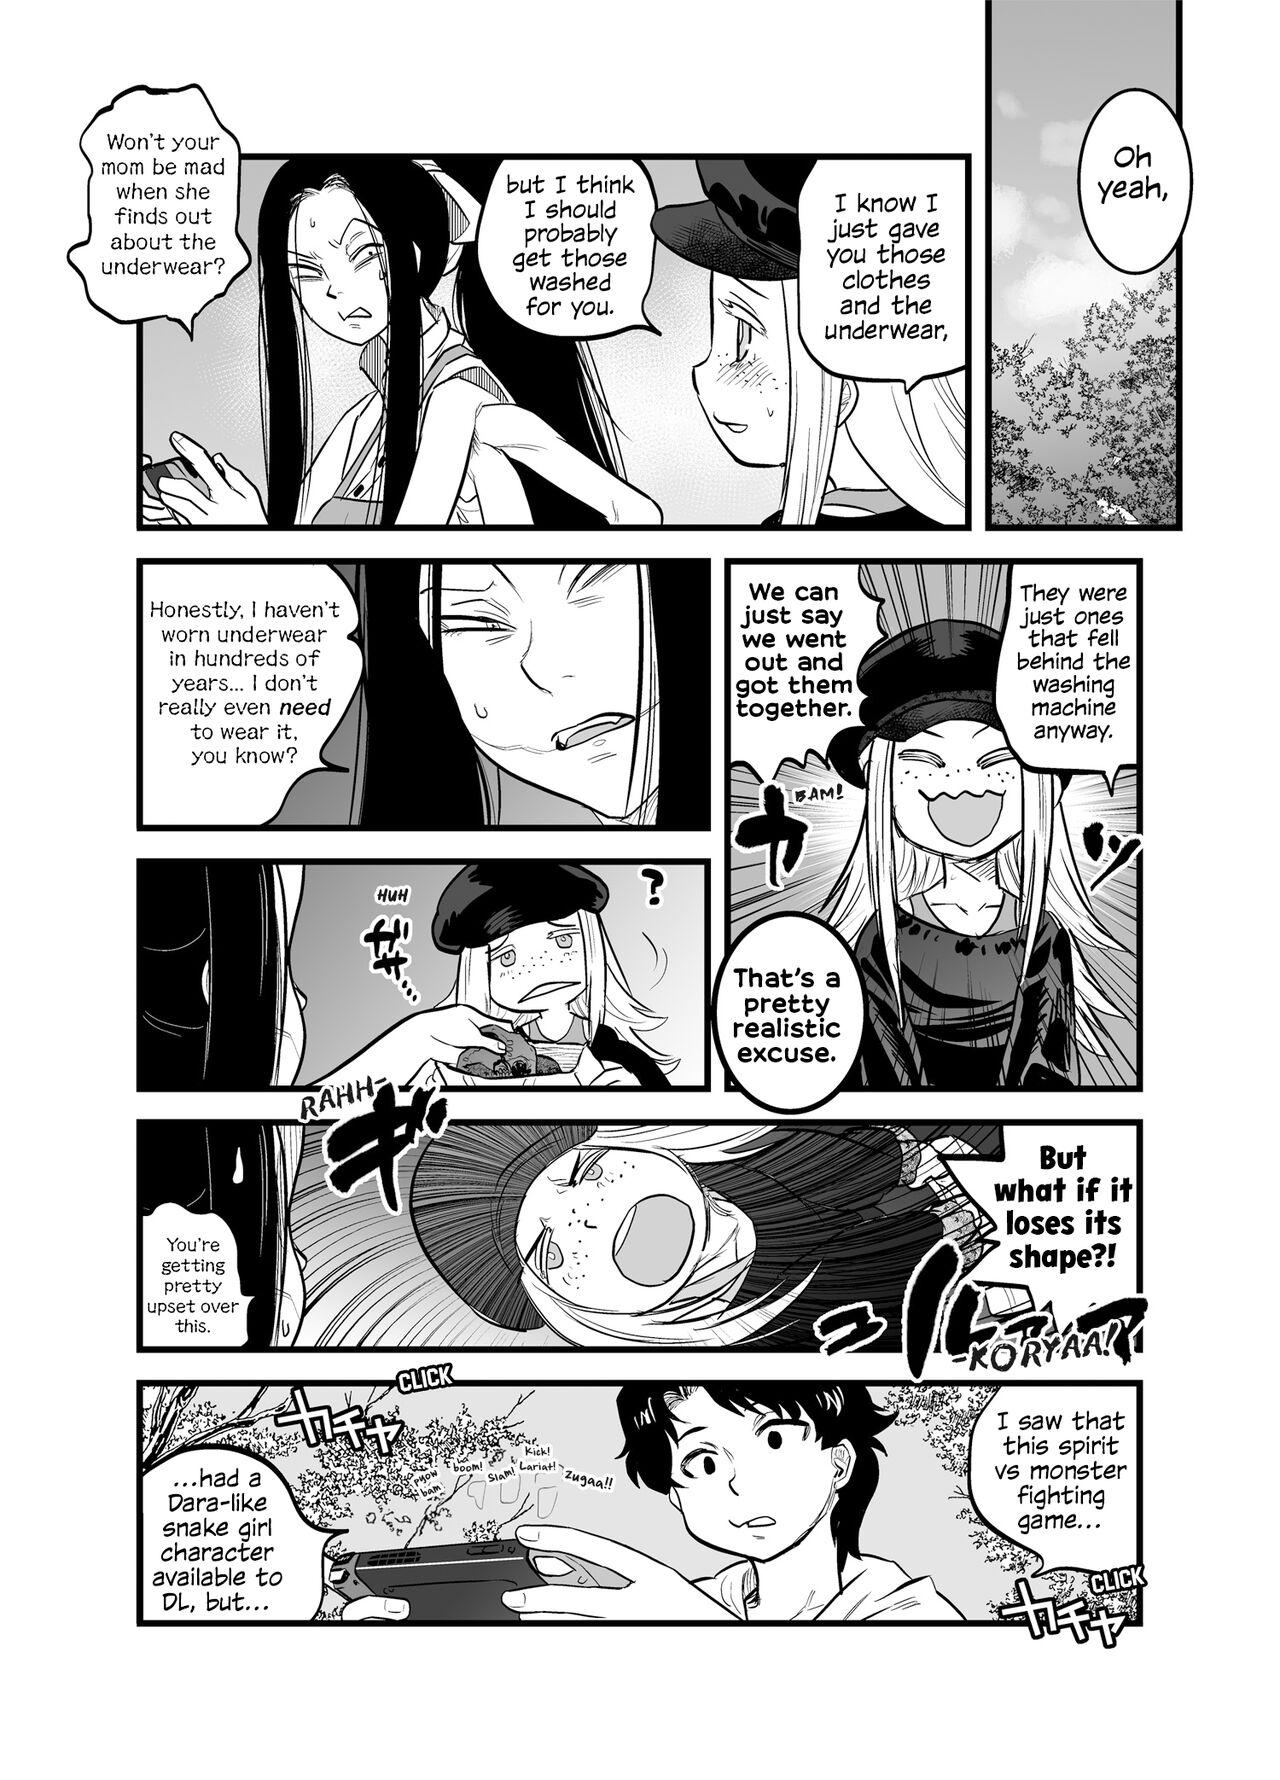 Art [Tomotsuka Haruomi] Reiwa no Dara-san R18 Version - Chapter 7 [English][Digital] - Original 1080p - Page 2